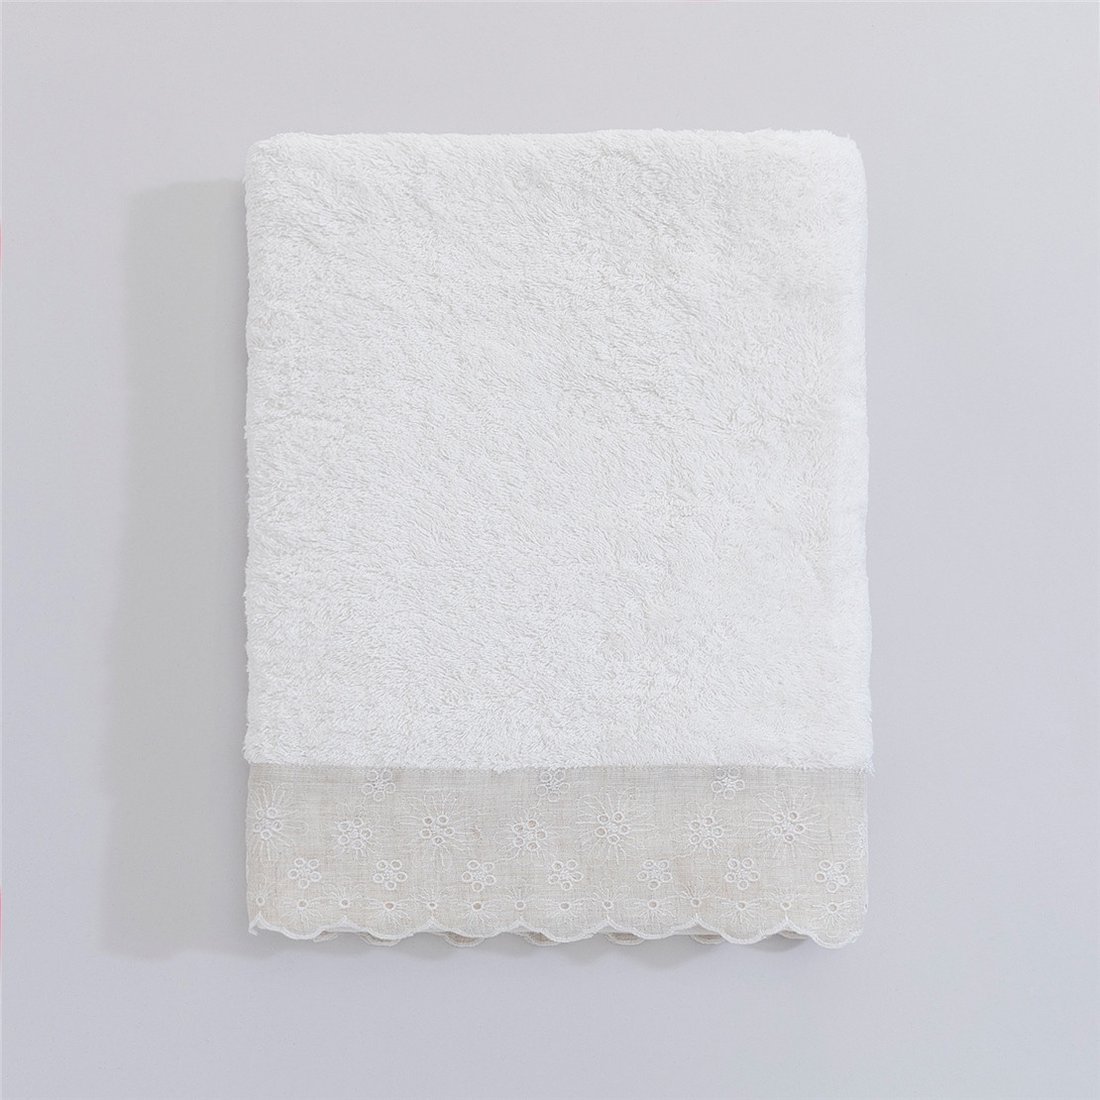 Мягкое банное полотенце Delma 85*150 с кружевом